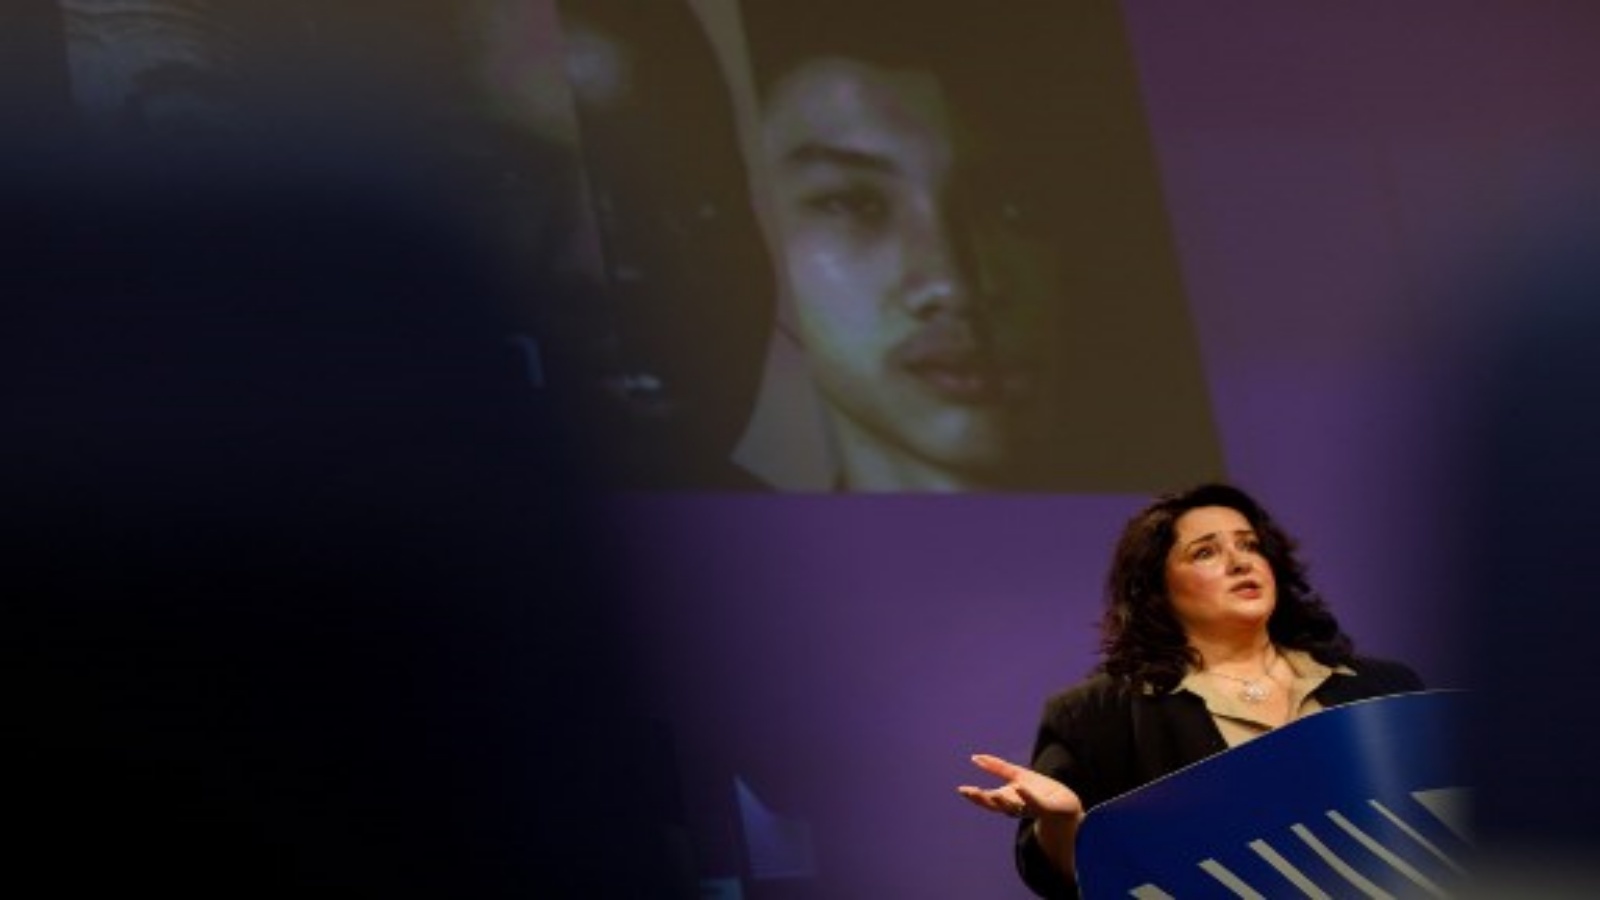 المفوضة الأوروبية للمساواة هيلينا دالي تشارك في مؤتمر إعلامي حول خطة عمل الاتحاد الأوروبي لمكافحة العنصرية في مقر الاتحاد الأوروبي في بروكسل ، في 18 سبتمبر 2020.